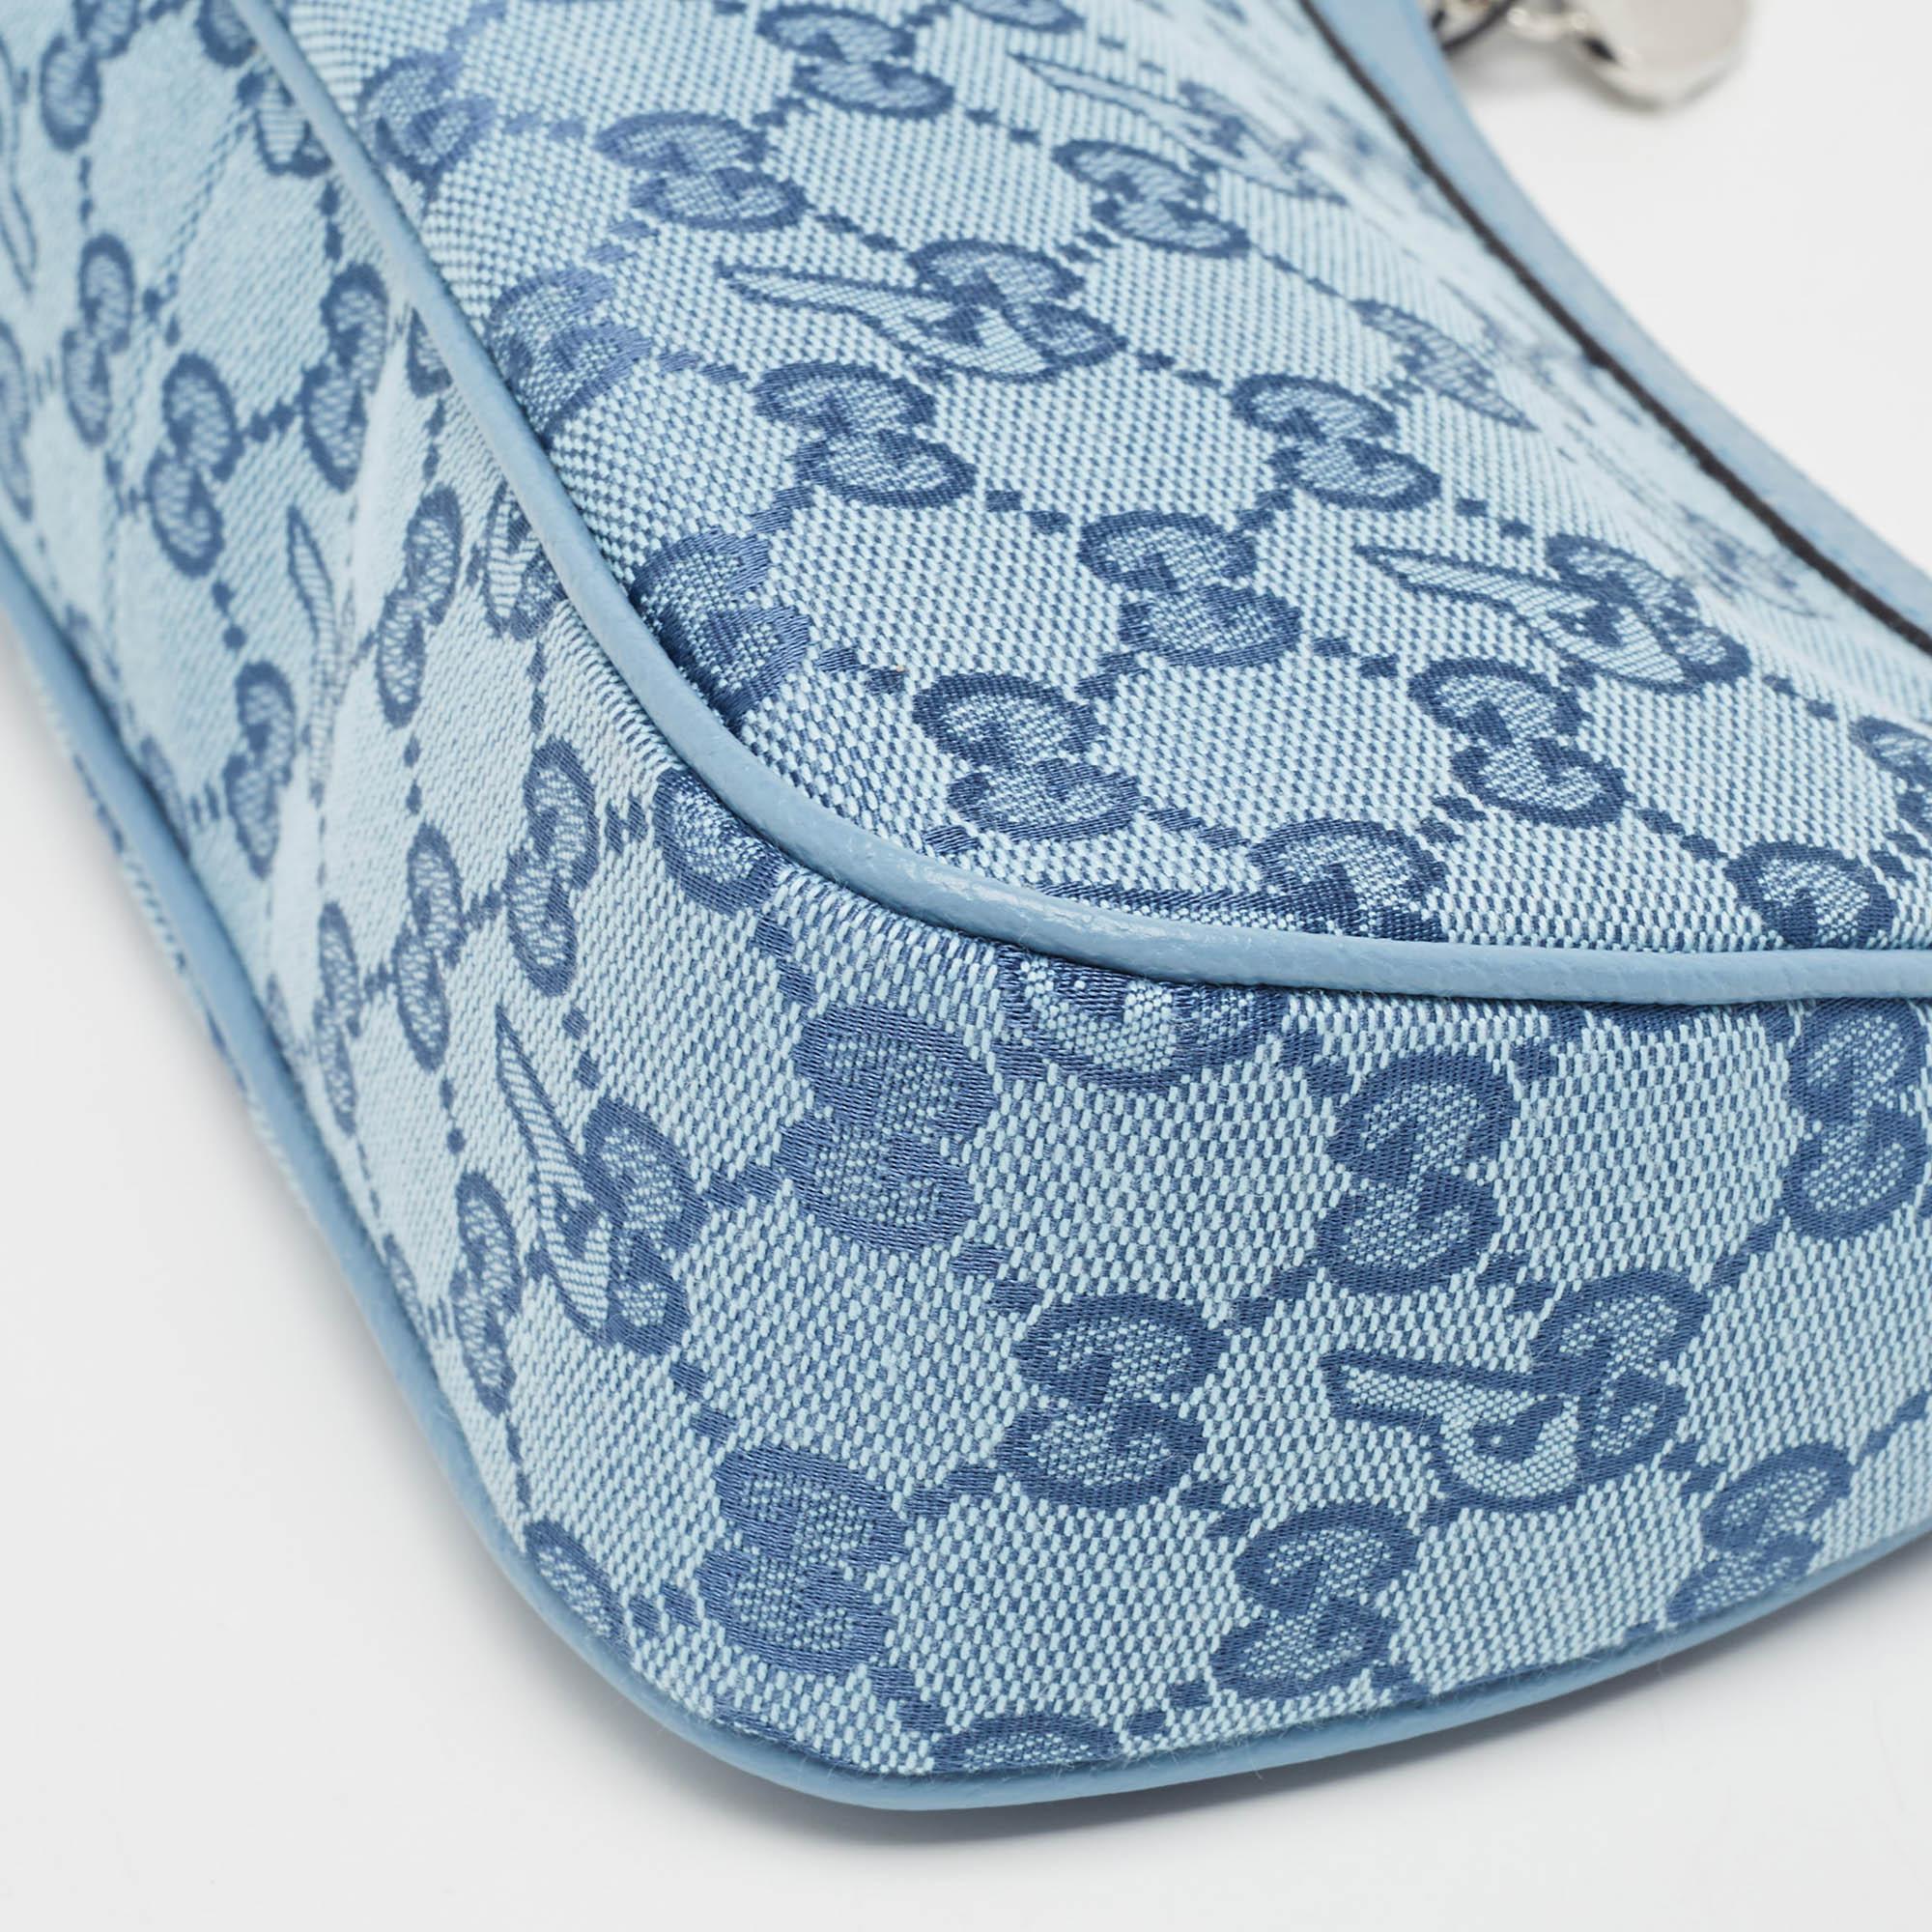 Gucci x Palace Blue GG-P Canvas Half-Moon Mini Bag In New Condition For Sale In Dubai, Al Qouz 2